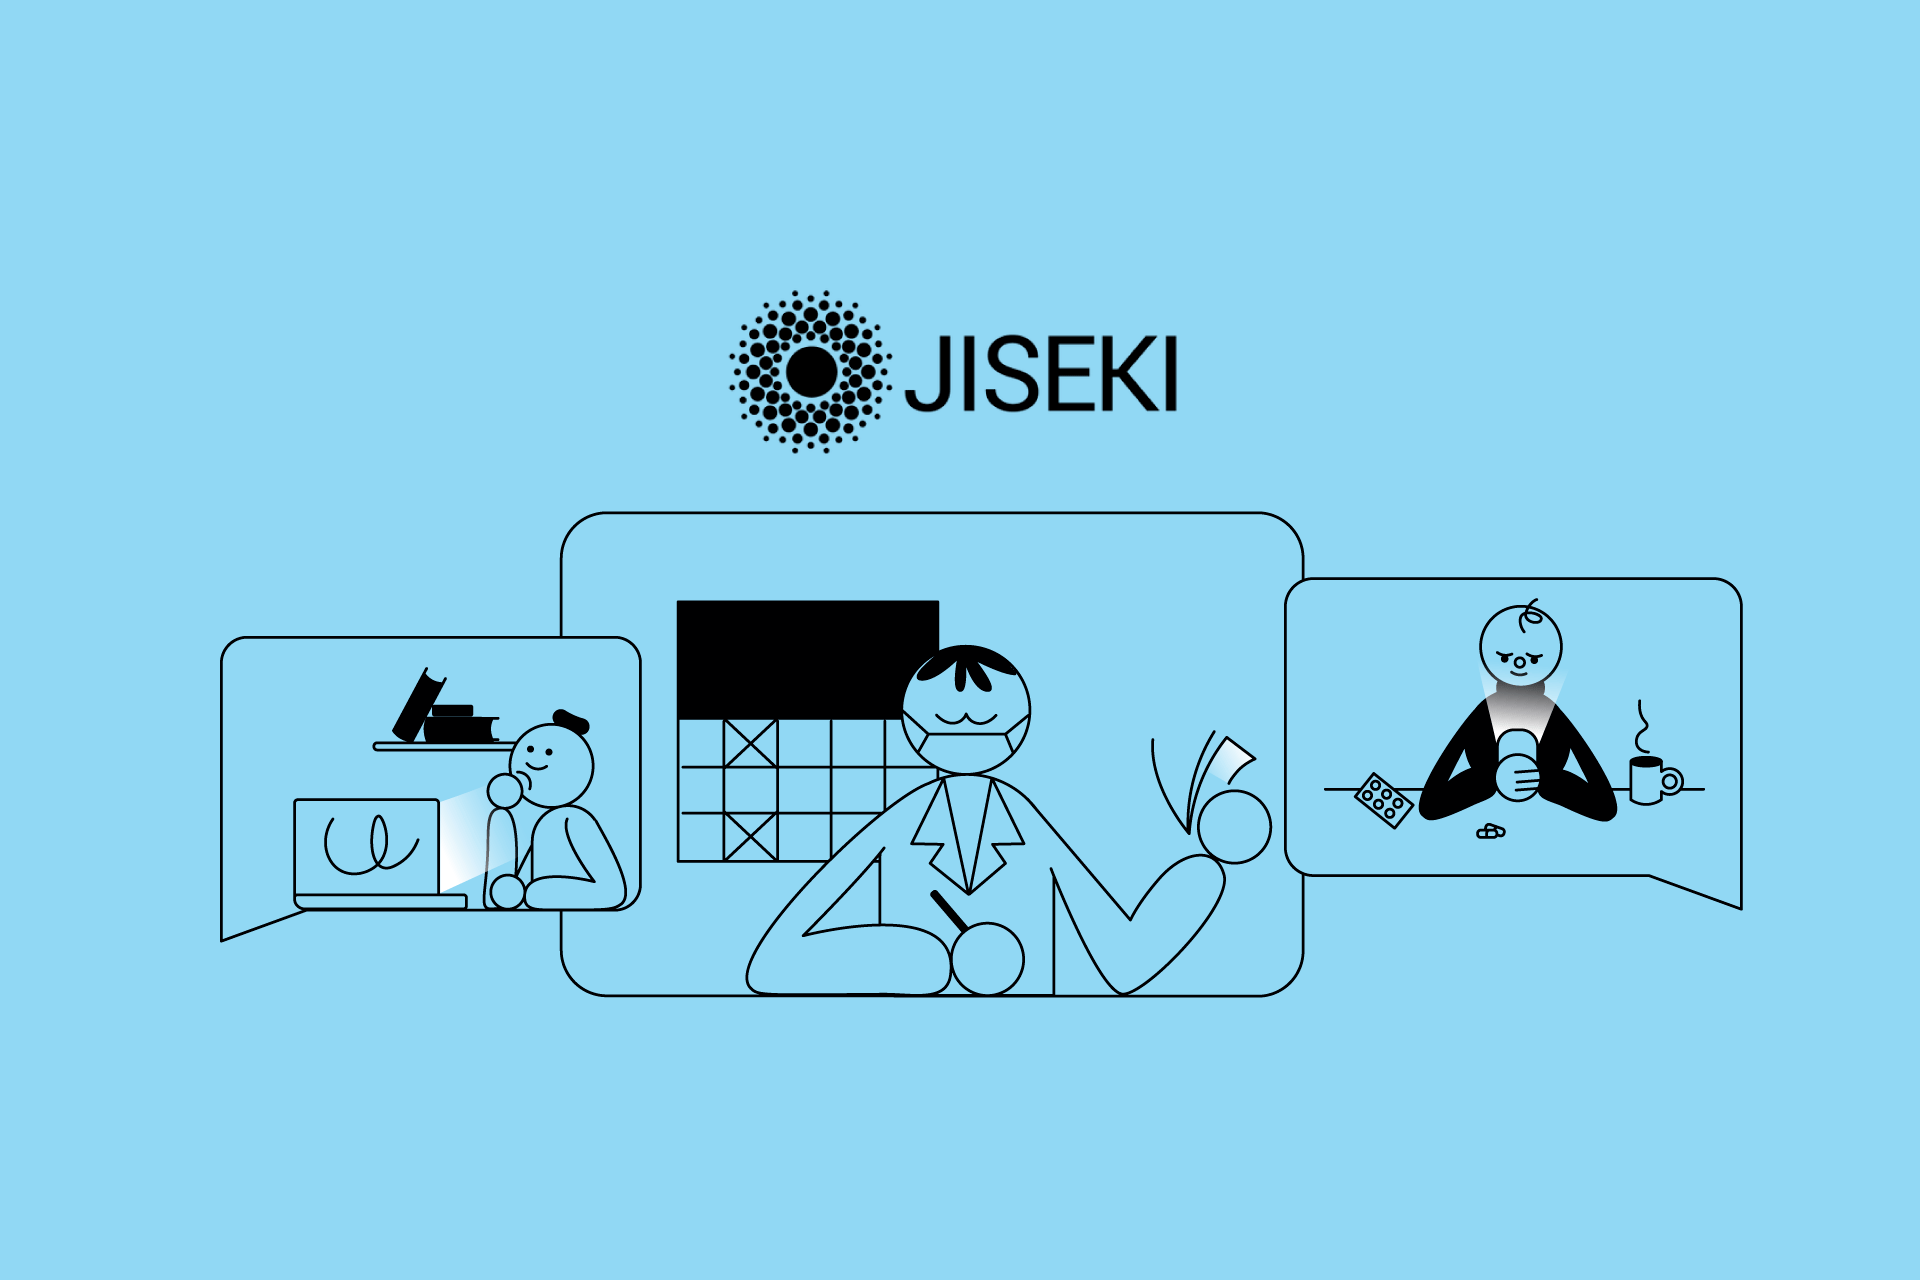 Jiseki Health - сервис, который помогает следить за своим здоровьем и улучшать качество жизни.